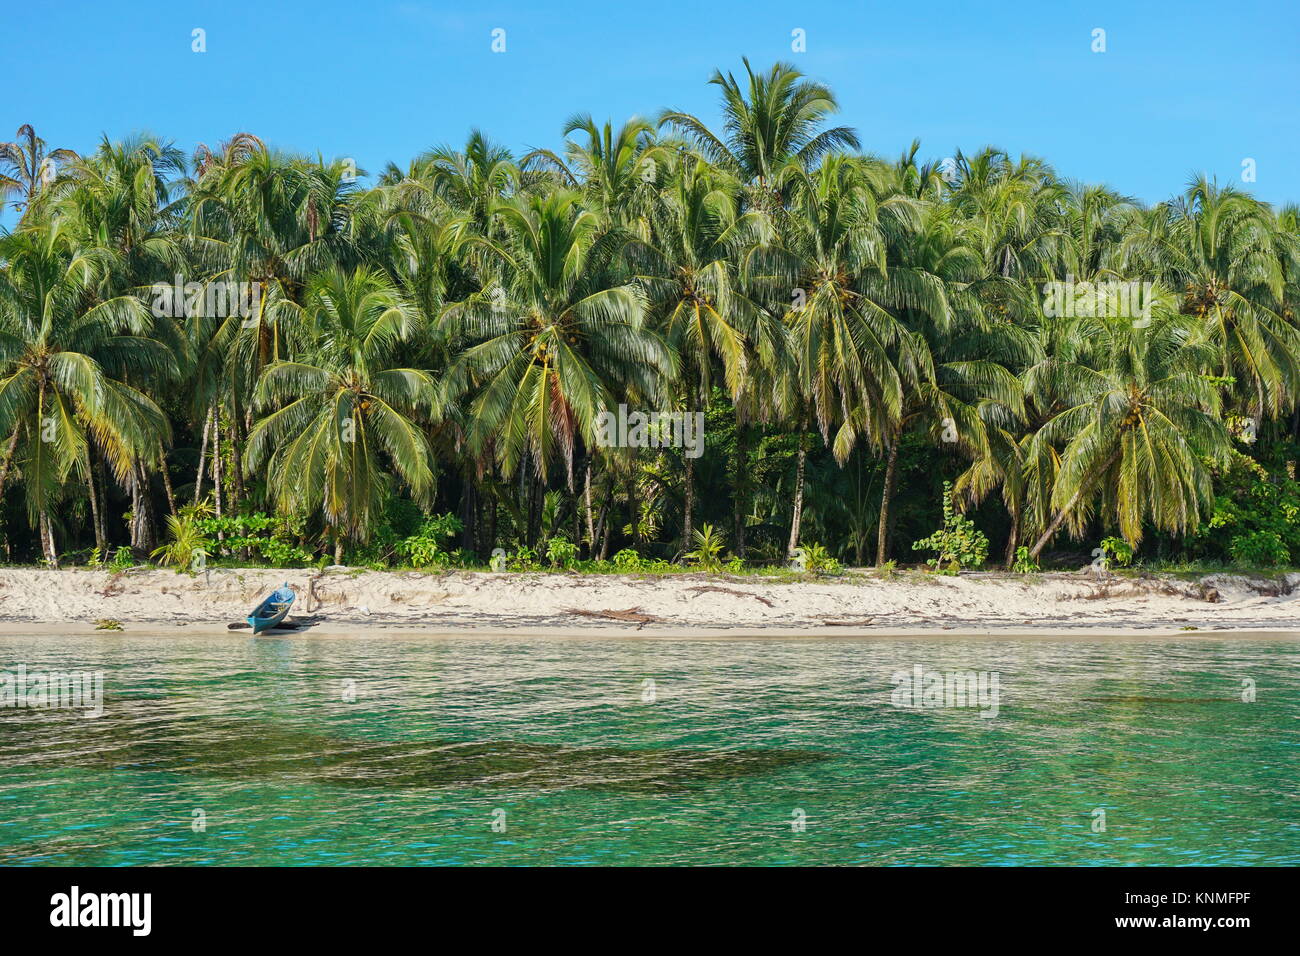 Plage tropicale luxuriante avec des cocotiers et une pirogue en bois sur le sable, la mer des Caraïbes, Bocas del Toro, PANAMA, Amérique Centrale Banque D'Images